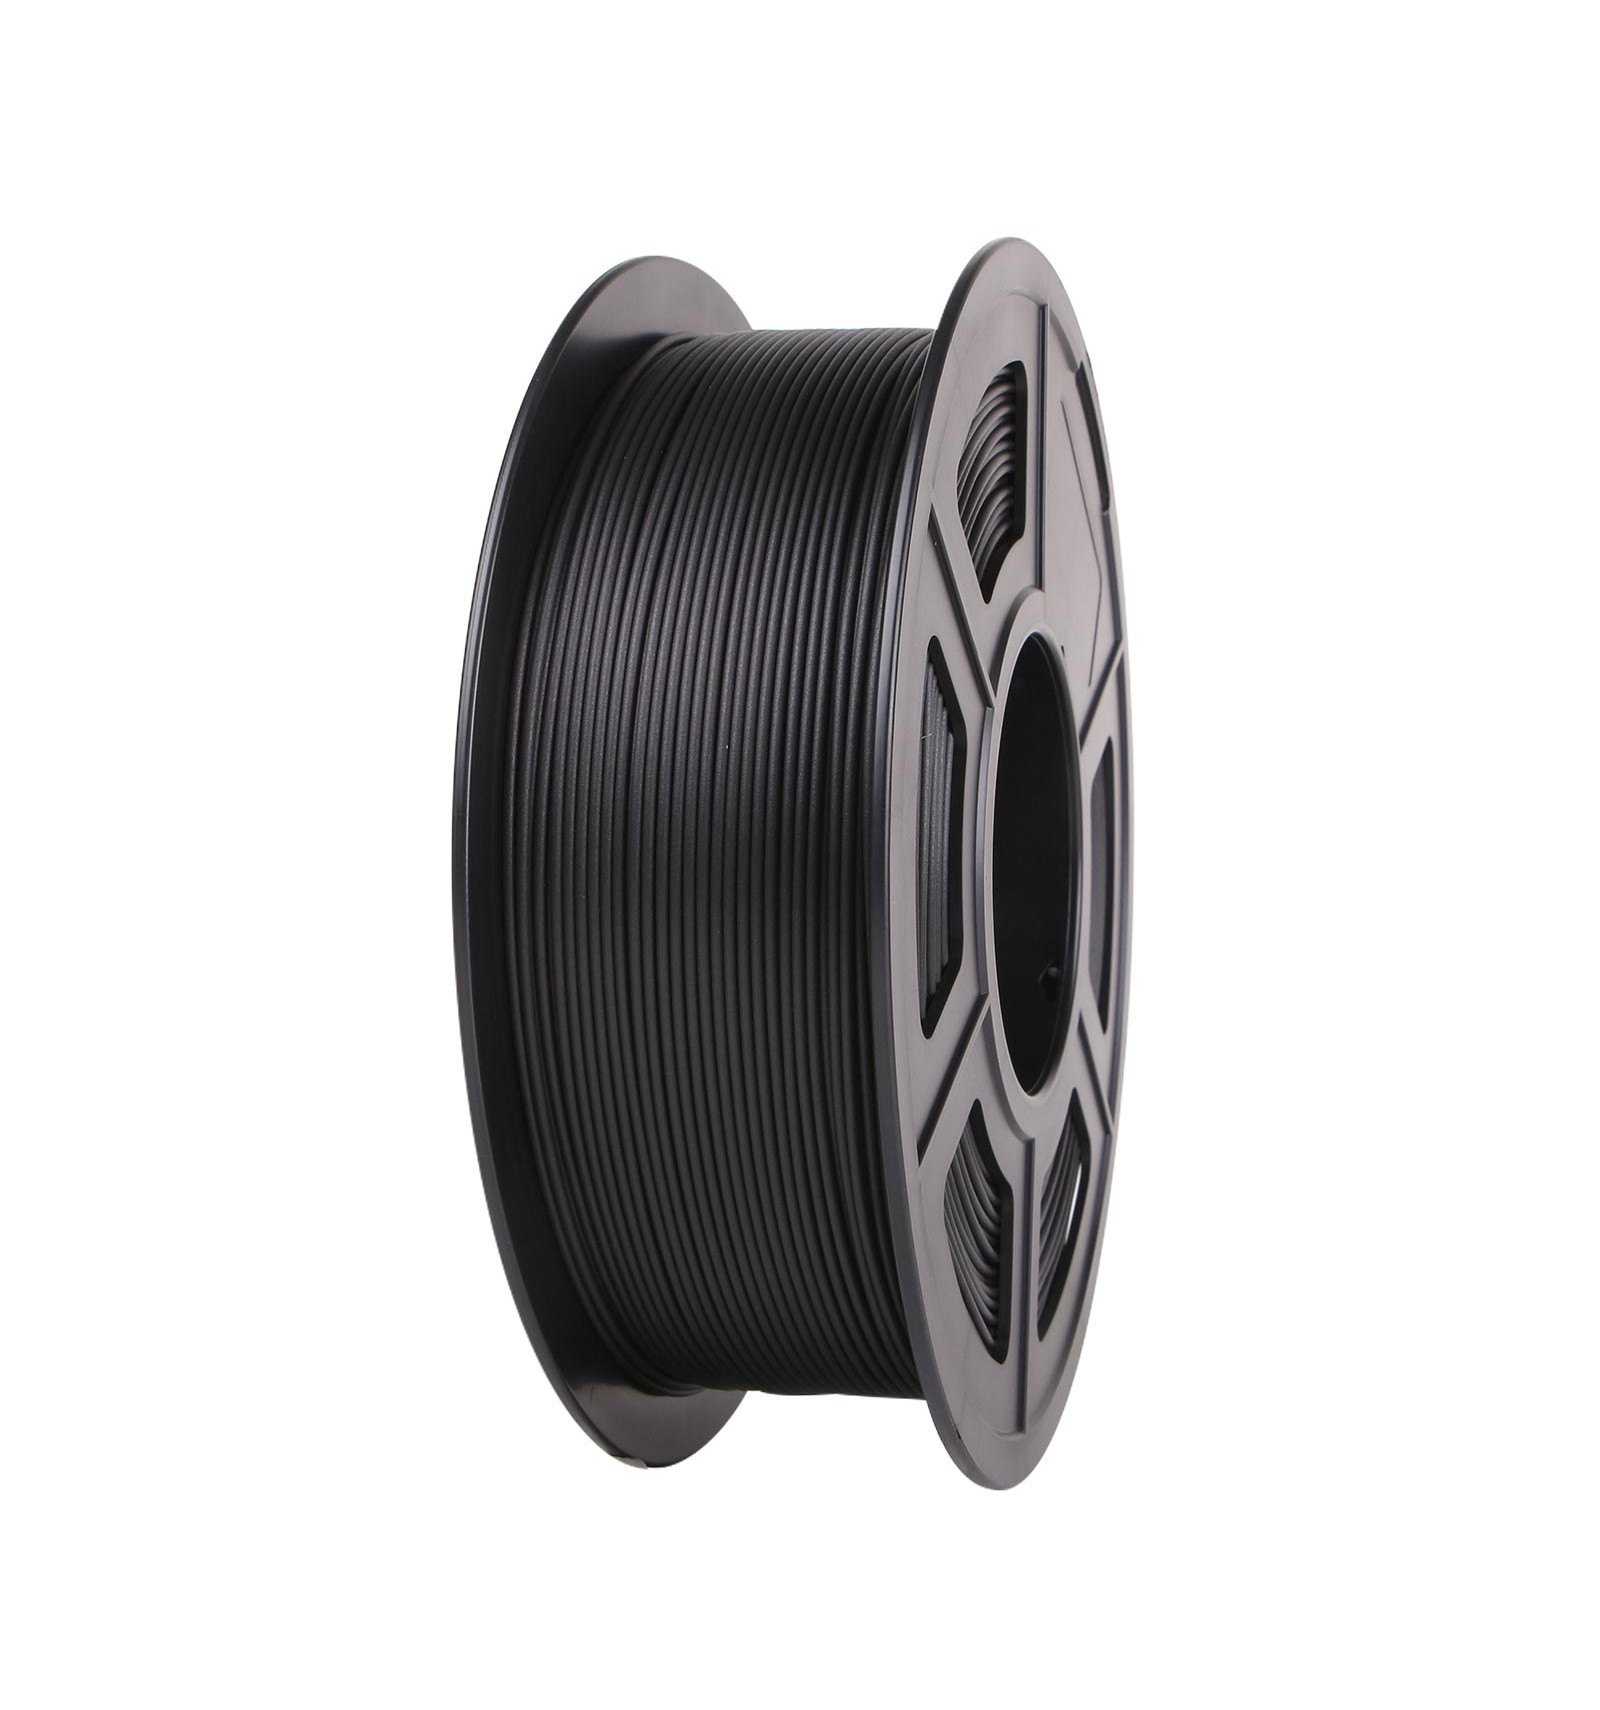 The PLA carbon fiber filament.